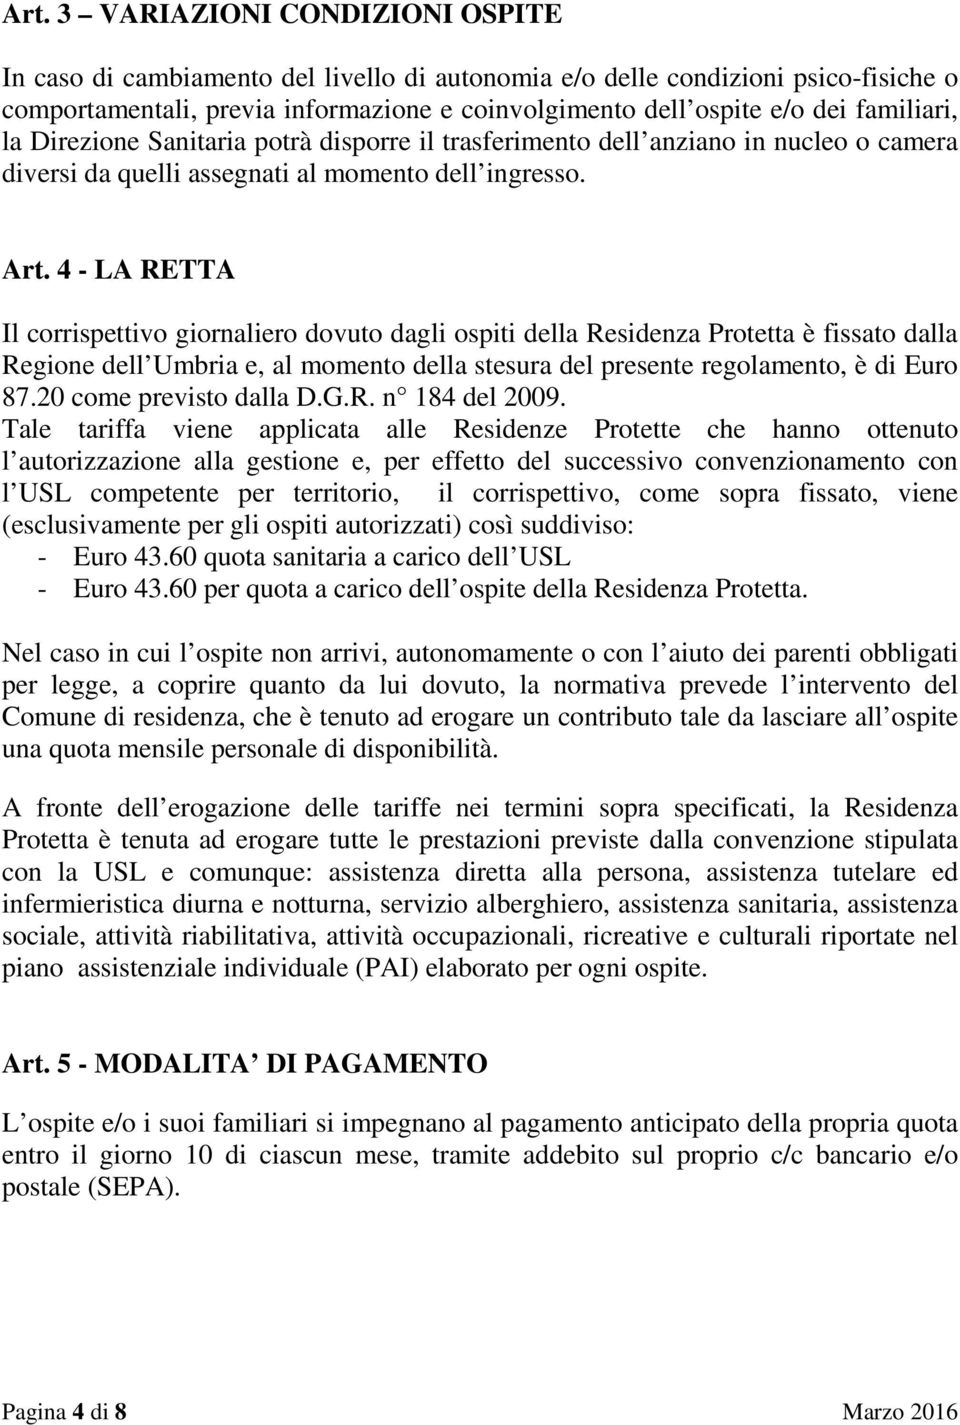 4 - LA RETTA Il corrispettivo giornaliero dovuto dagli ospiti della Residenza Protetta è fissato dalla Regione dell Umbria e, al momento della stesura del presente regolamento, è di Euro 87.